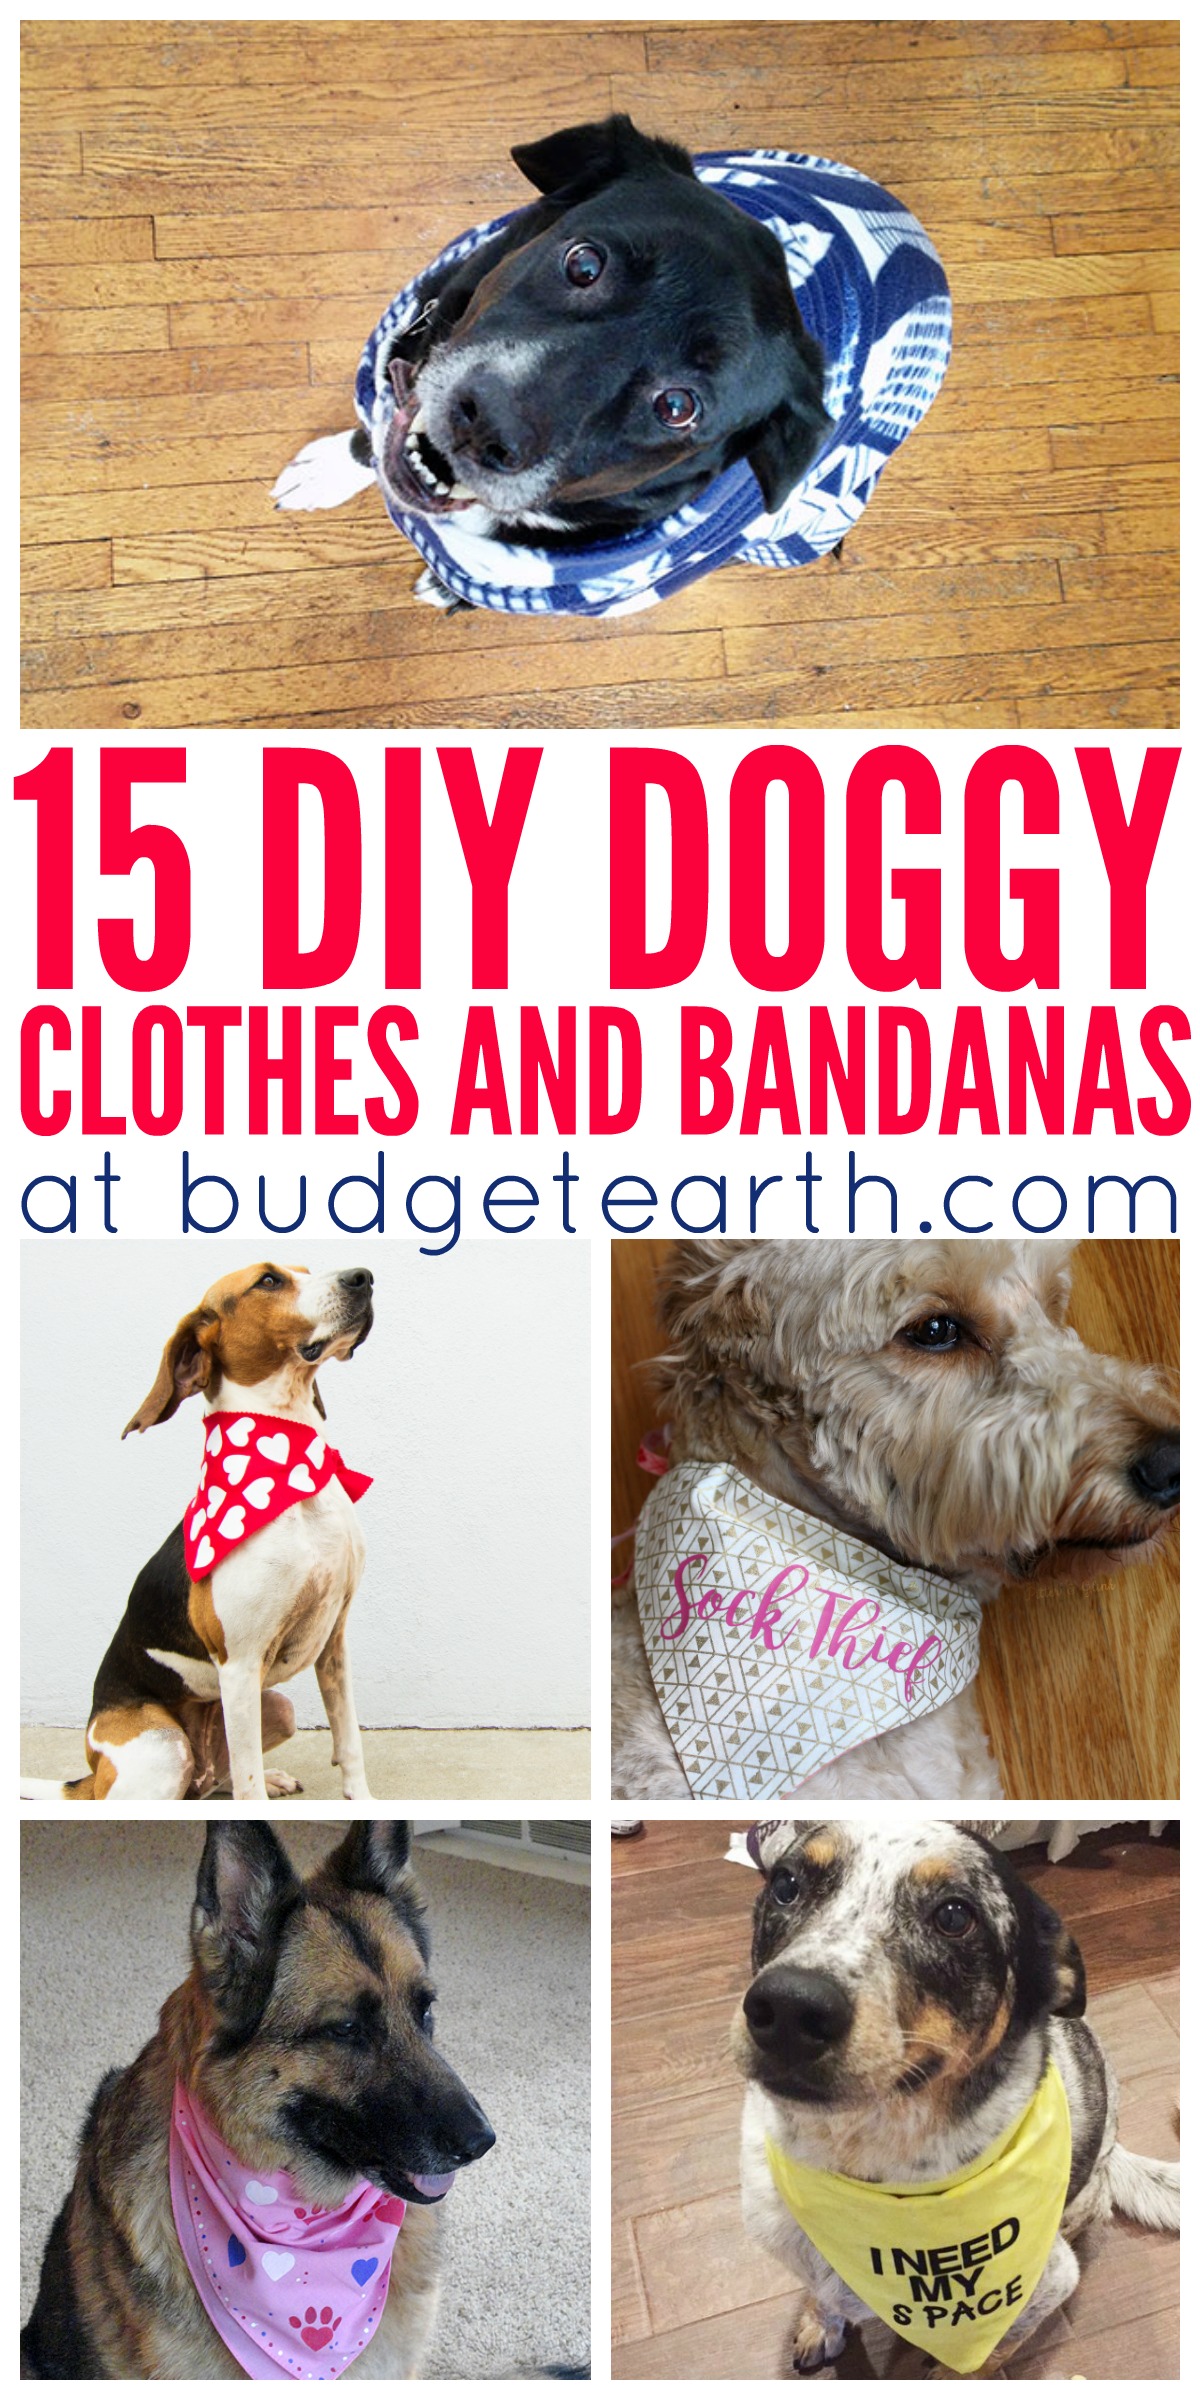 15 DIY Doggy Clothes & Bandanas